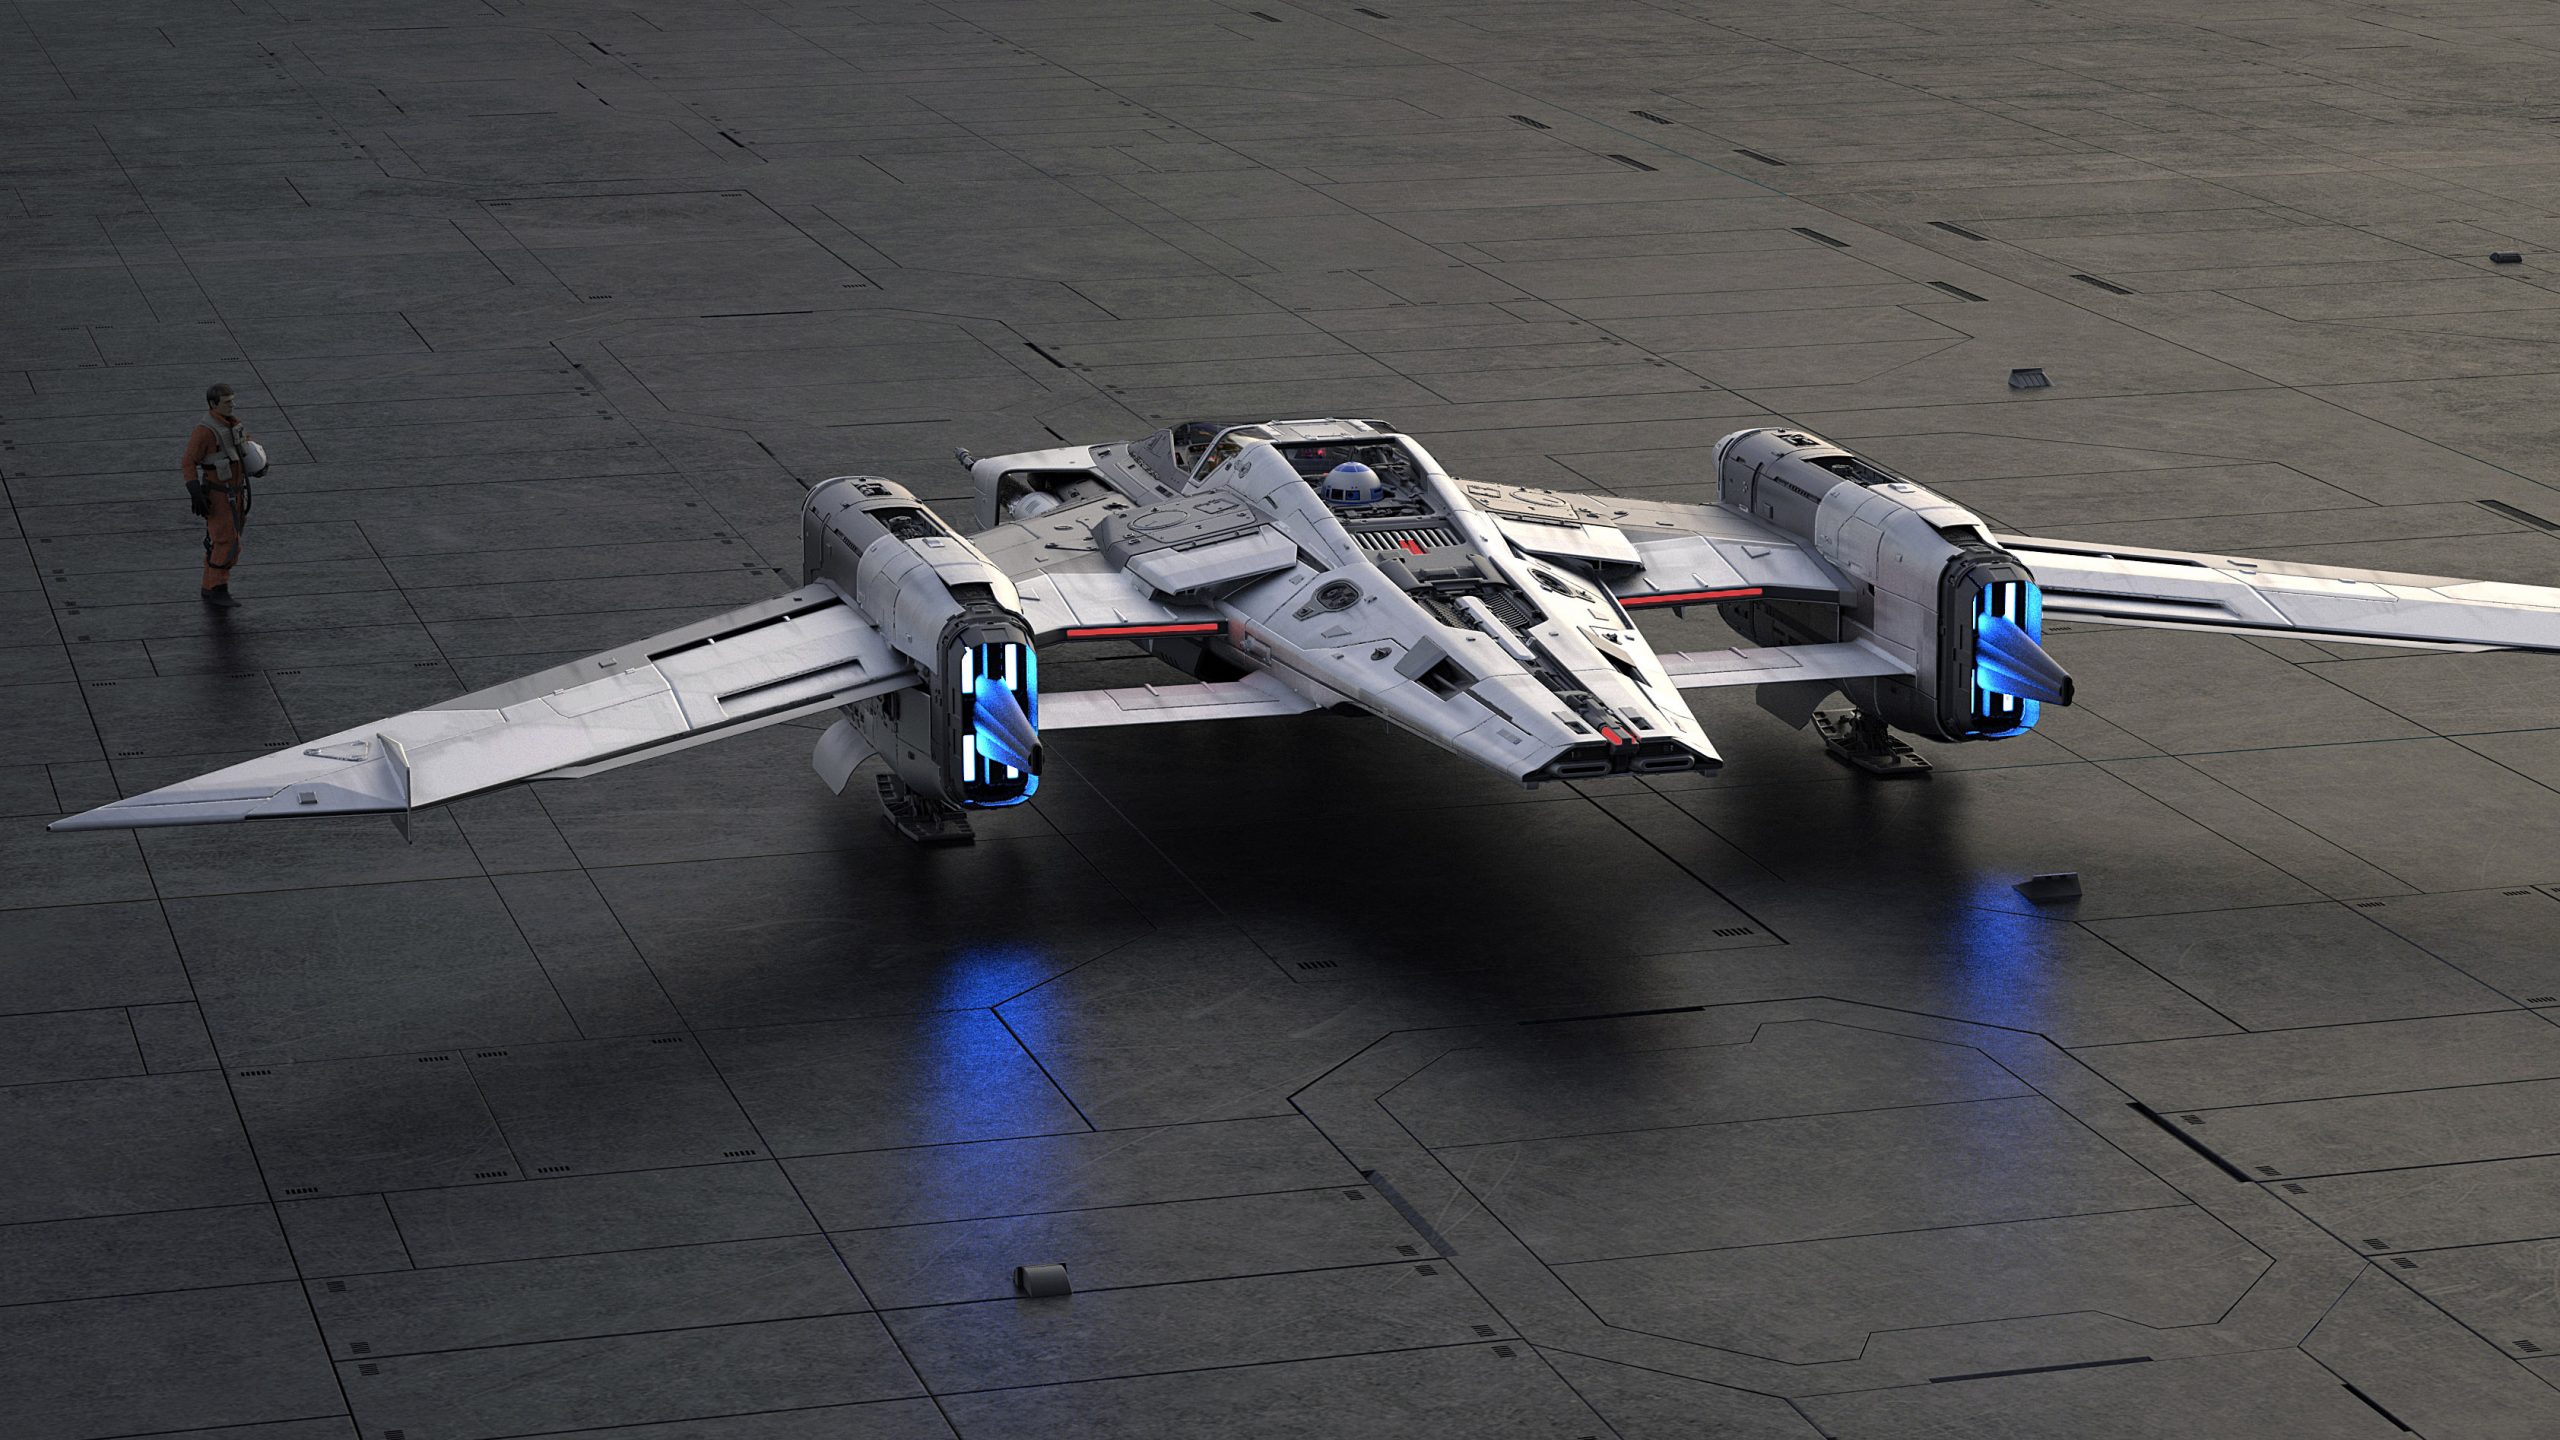 porsche unveils one-off star wars spaceship co-designed with lucasfilm